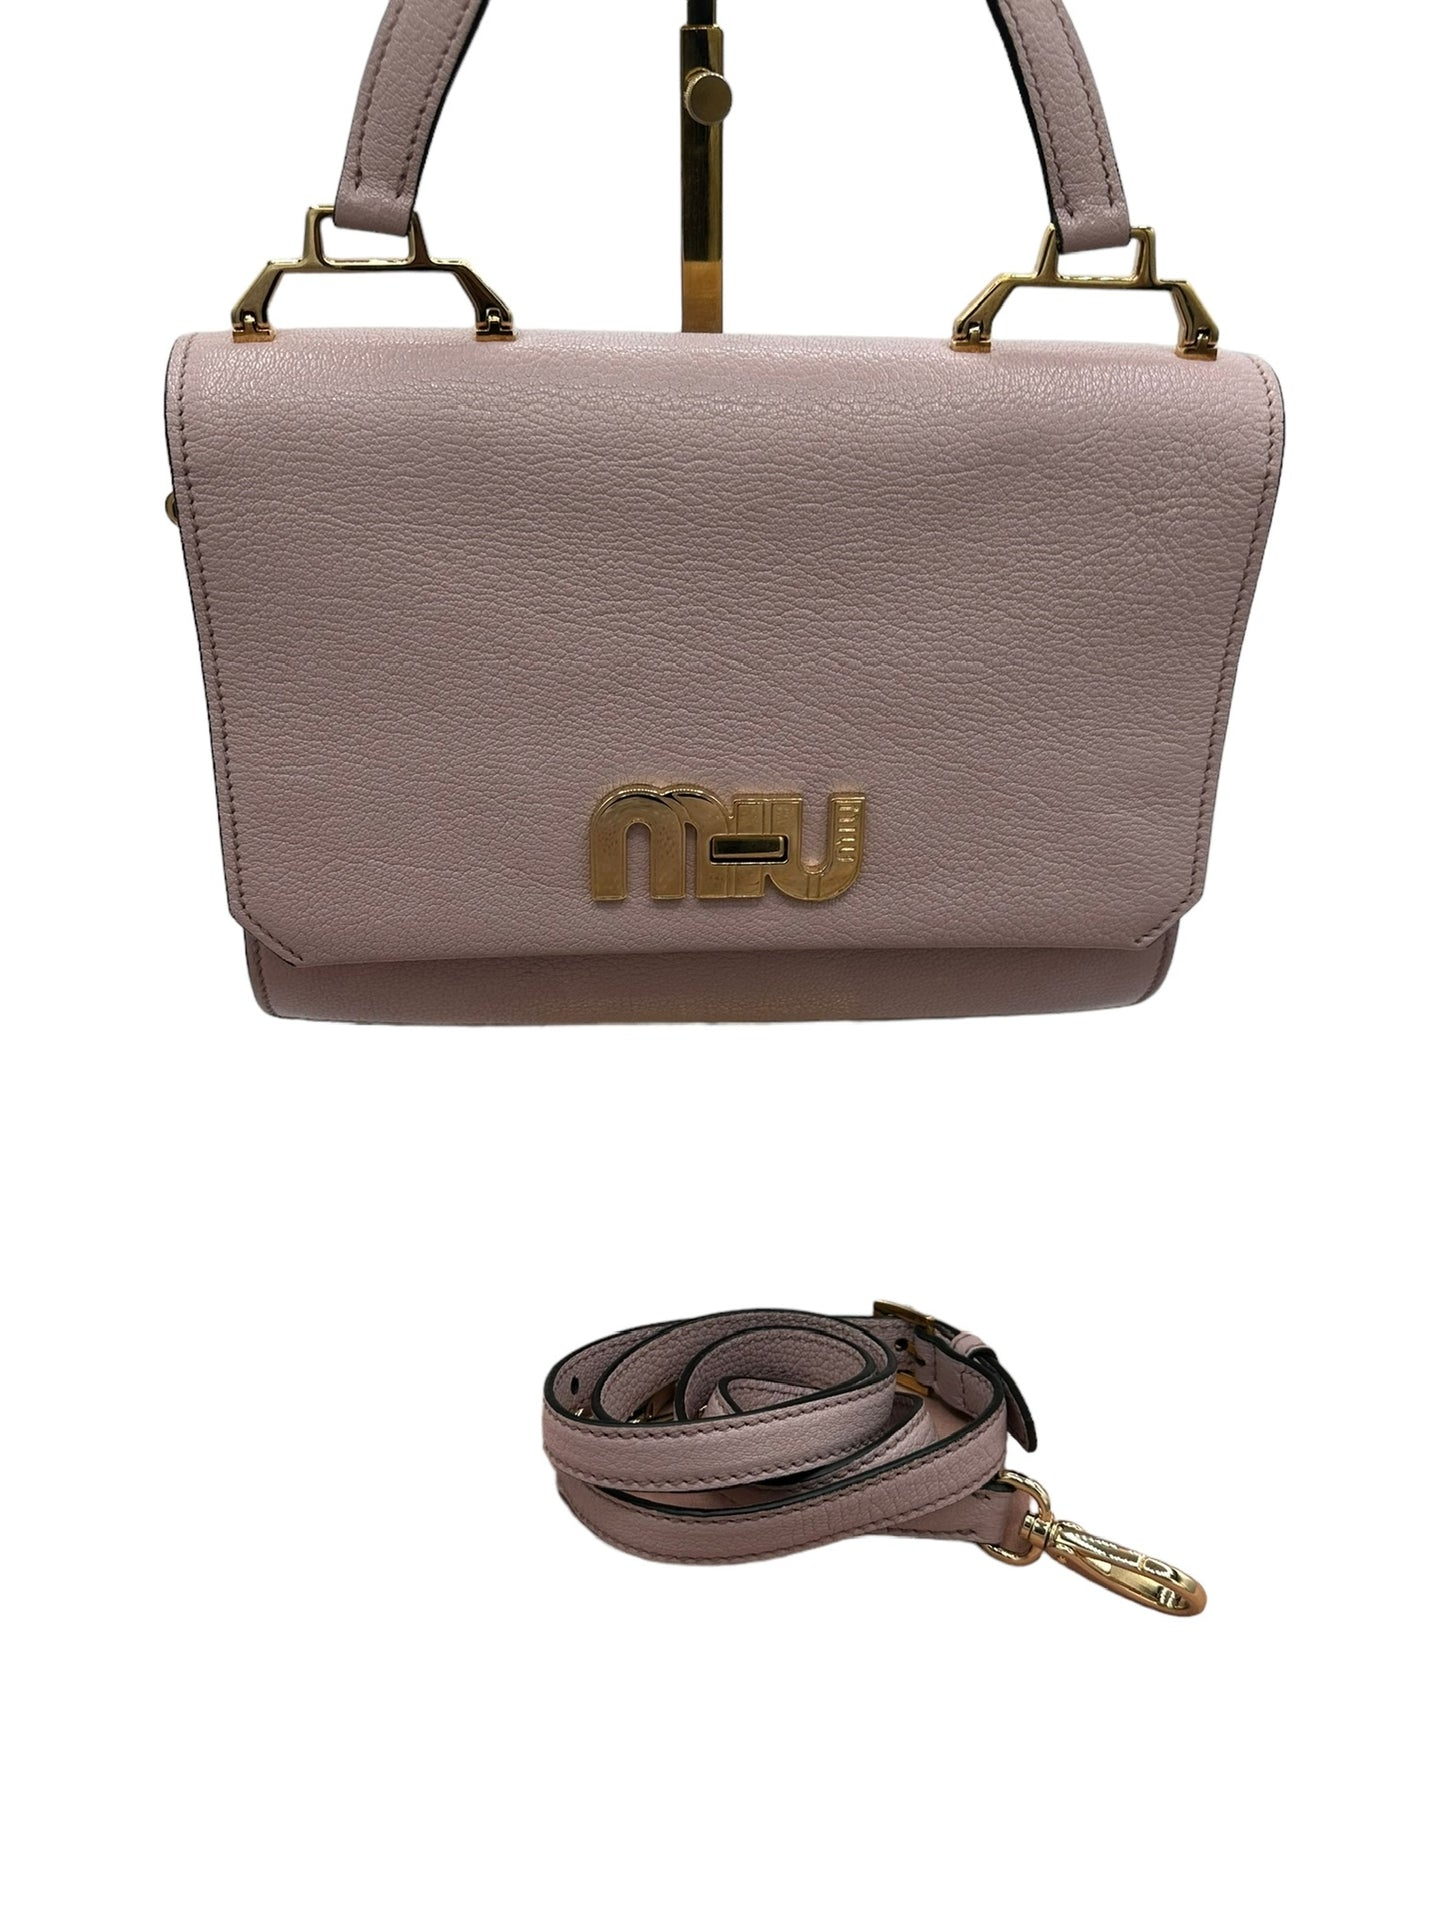 MIU MIU - Madras Handbag Light Pink Leather